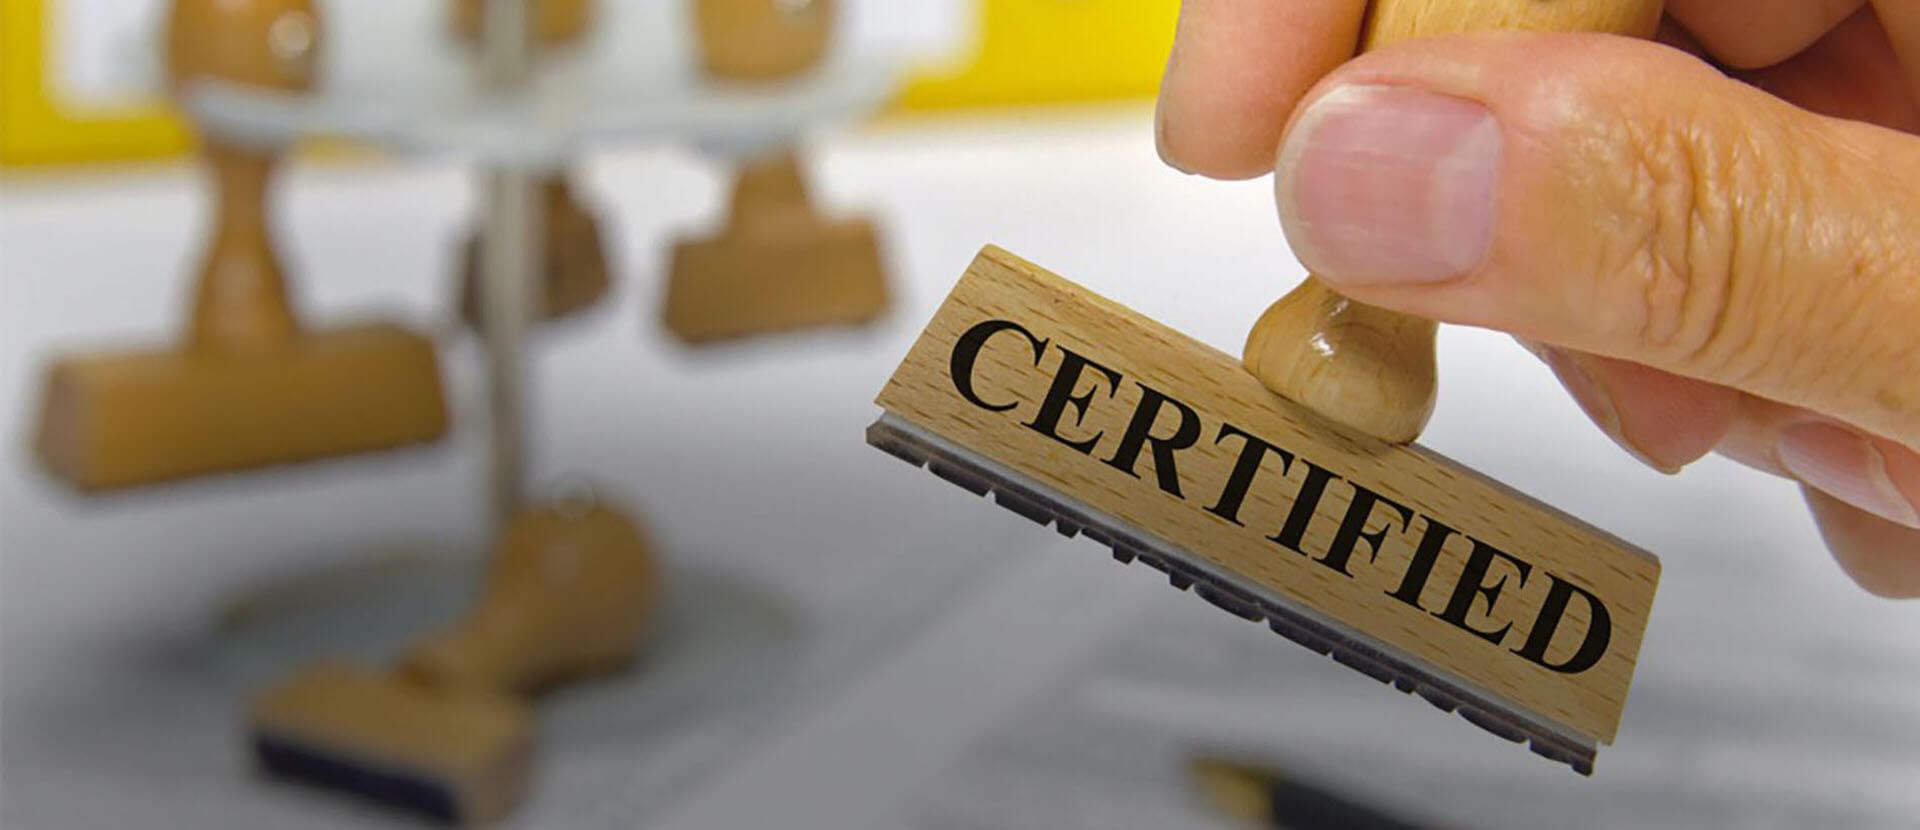 Сертификация товаров: что это и зачем она нужна?